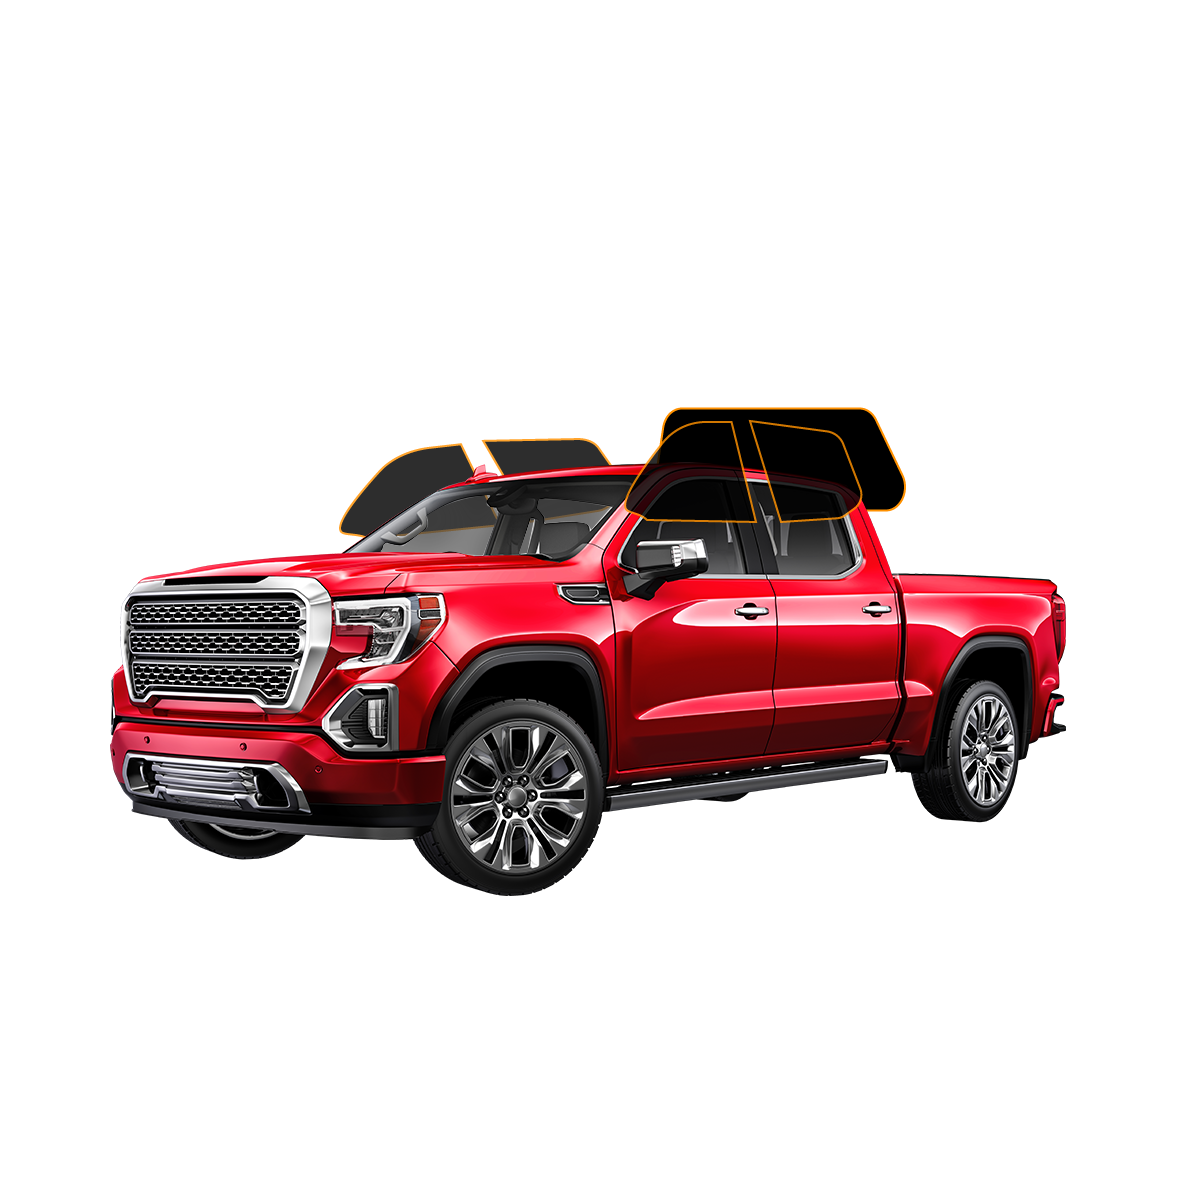 MotoShield Pro 4 Door Truck | Carbon Window Tint | All Sides + Rear  + Lifetime Warranty+ Lifetime Warranty